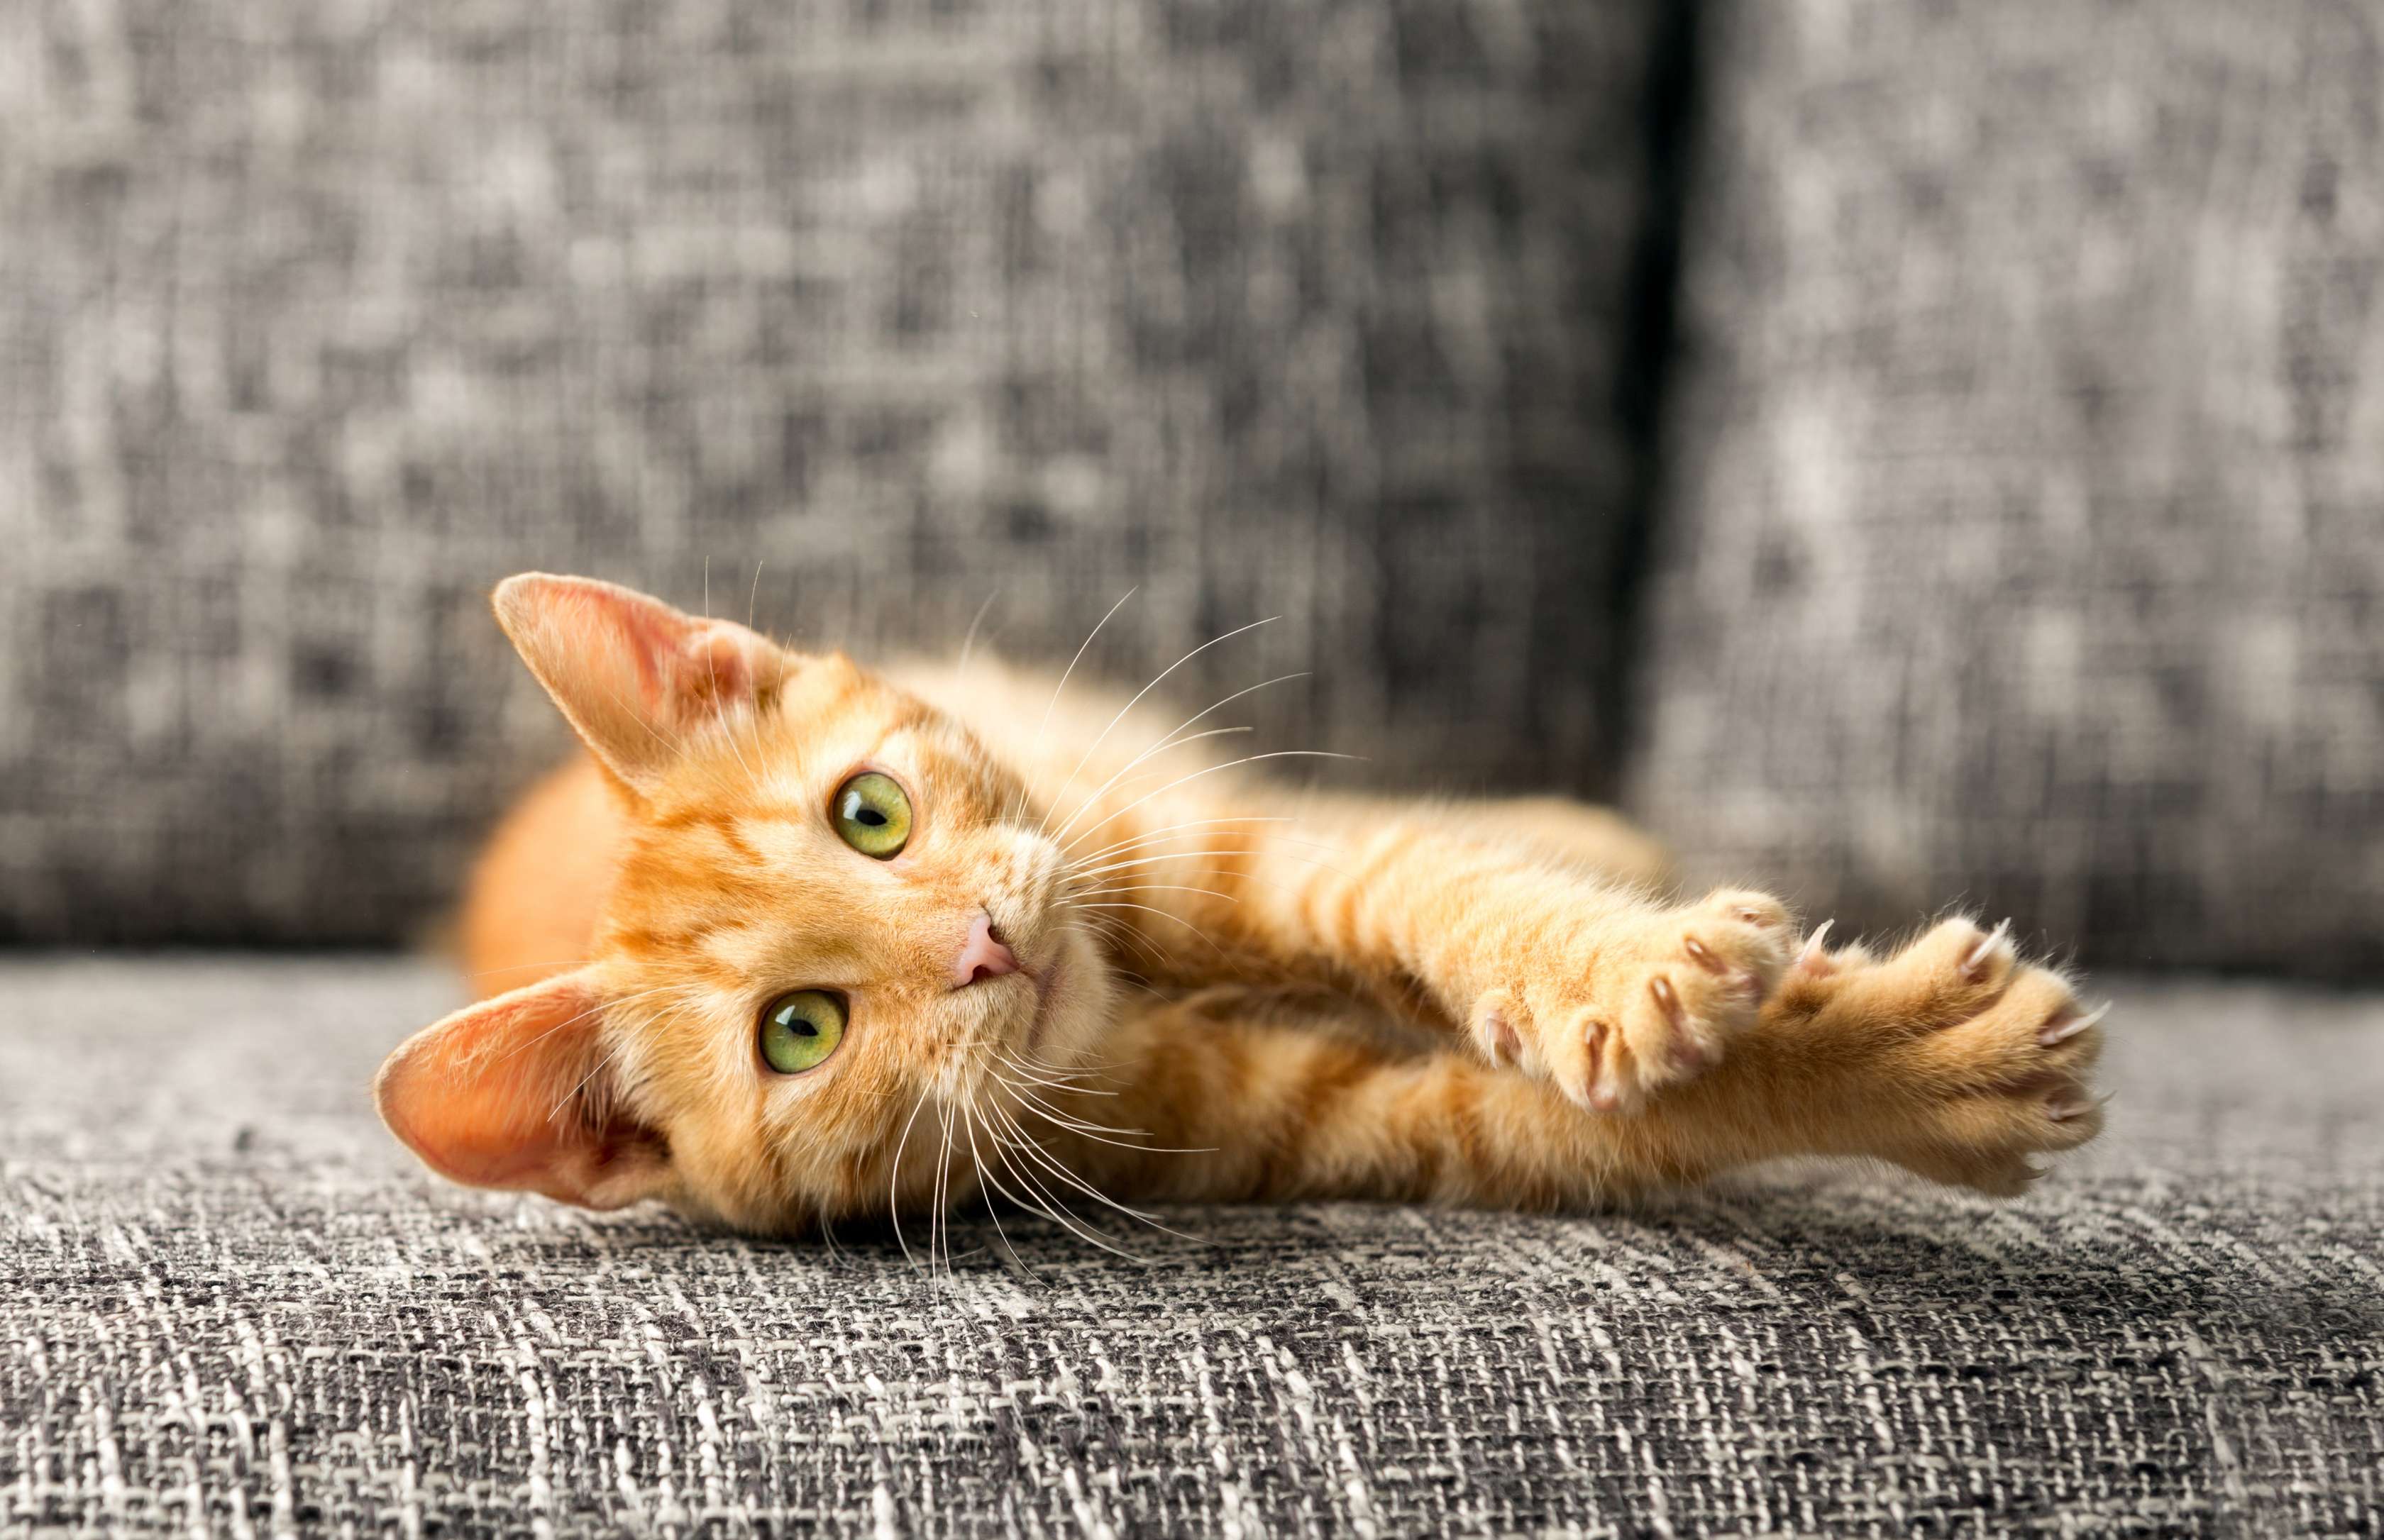 Haftpflichtversicherung Katze: Rot getigerte Katze räkelt sich mit ausgefahrenen Krallen auf dunkelgrauem Sofa.